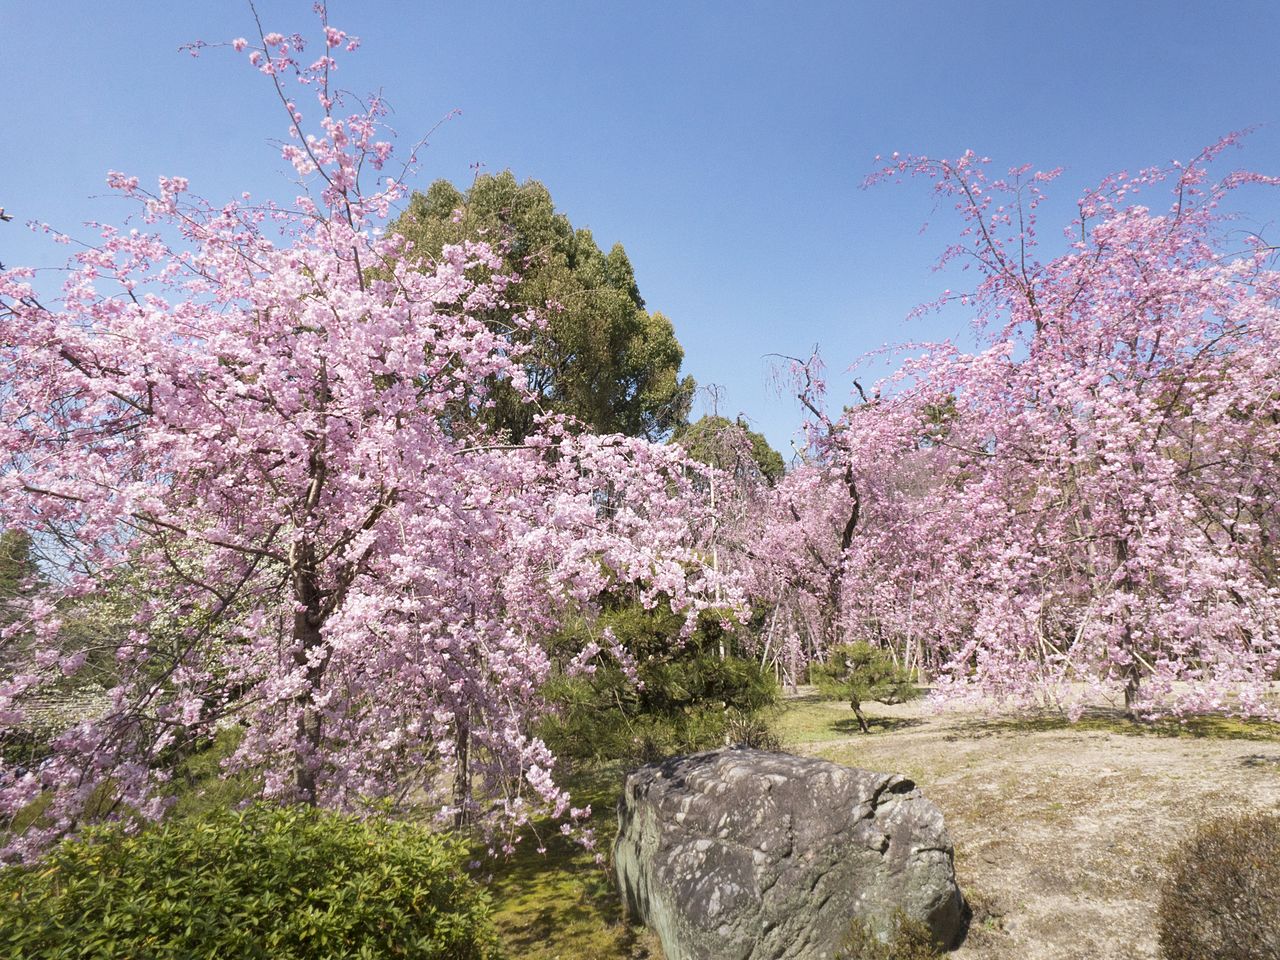 Святилище особенно известно своими сакурами сорта яэбэни-сидарэдзакура, здесь около 150 таких деревьев